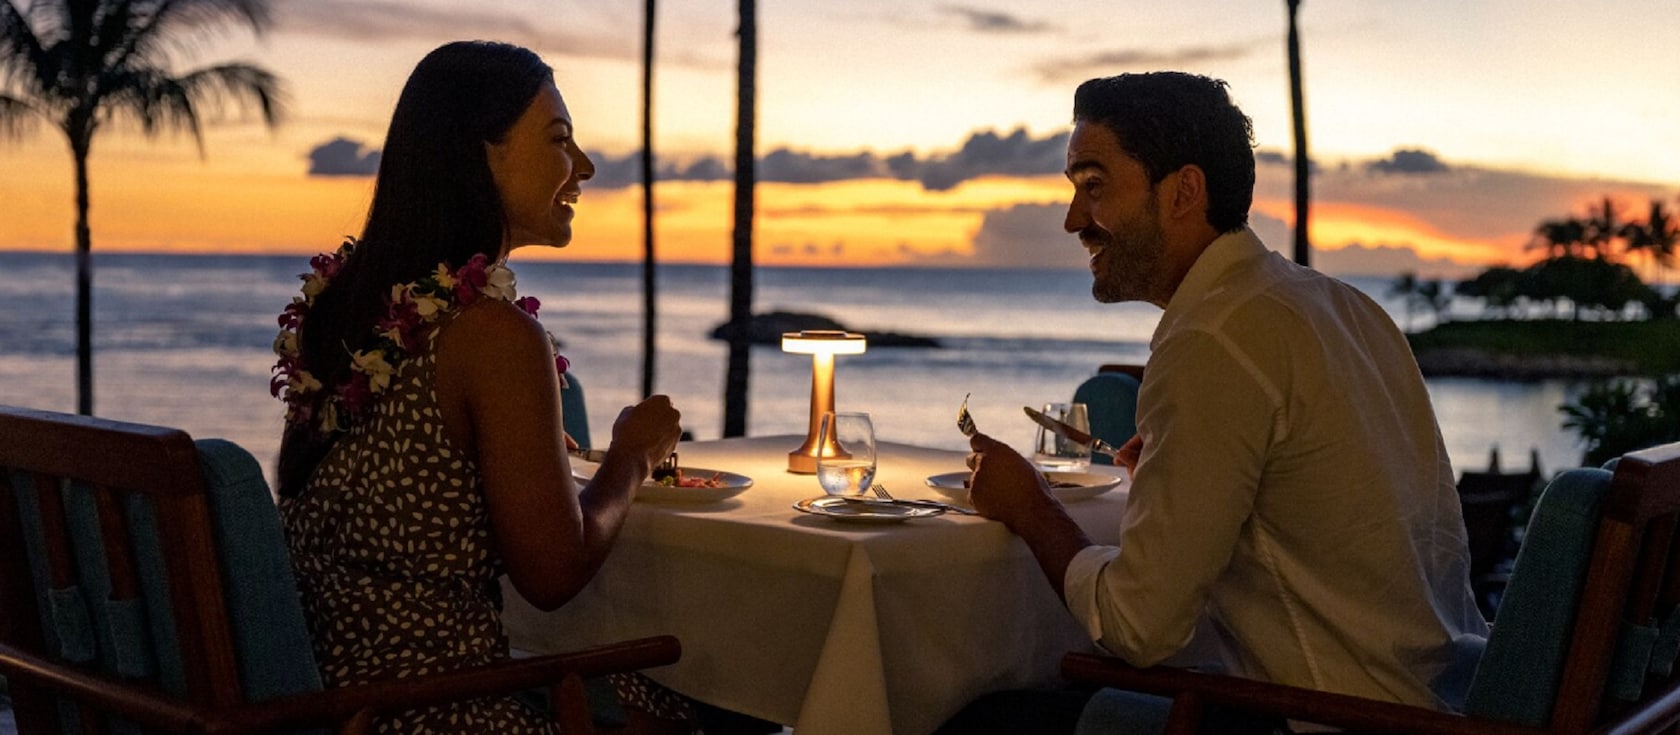 夕暮れ時に、海のそばに置かれたテーブルについてロマンチックなディナーを楽しむ男女